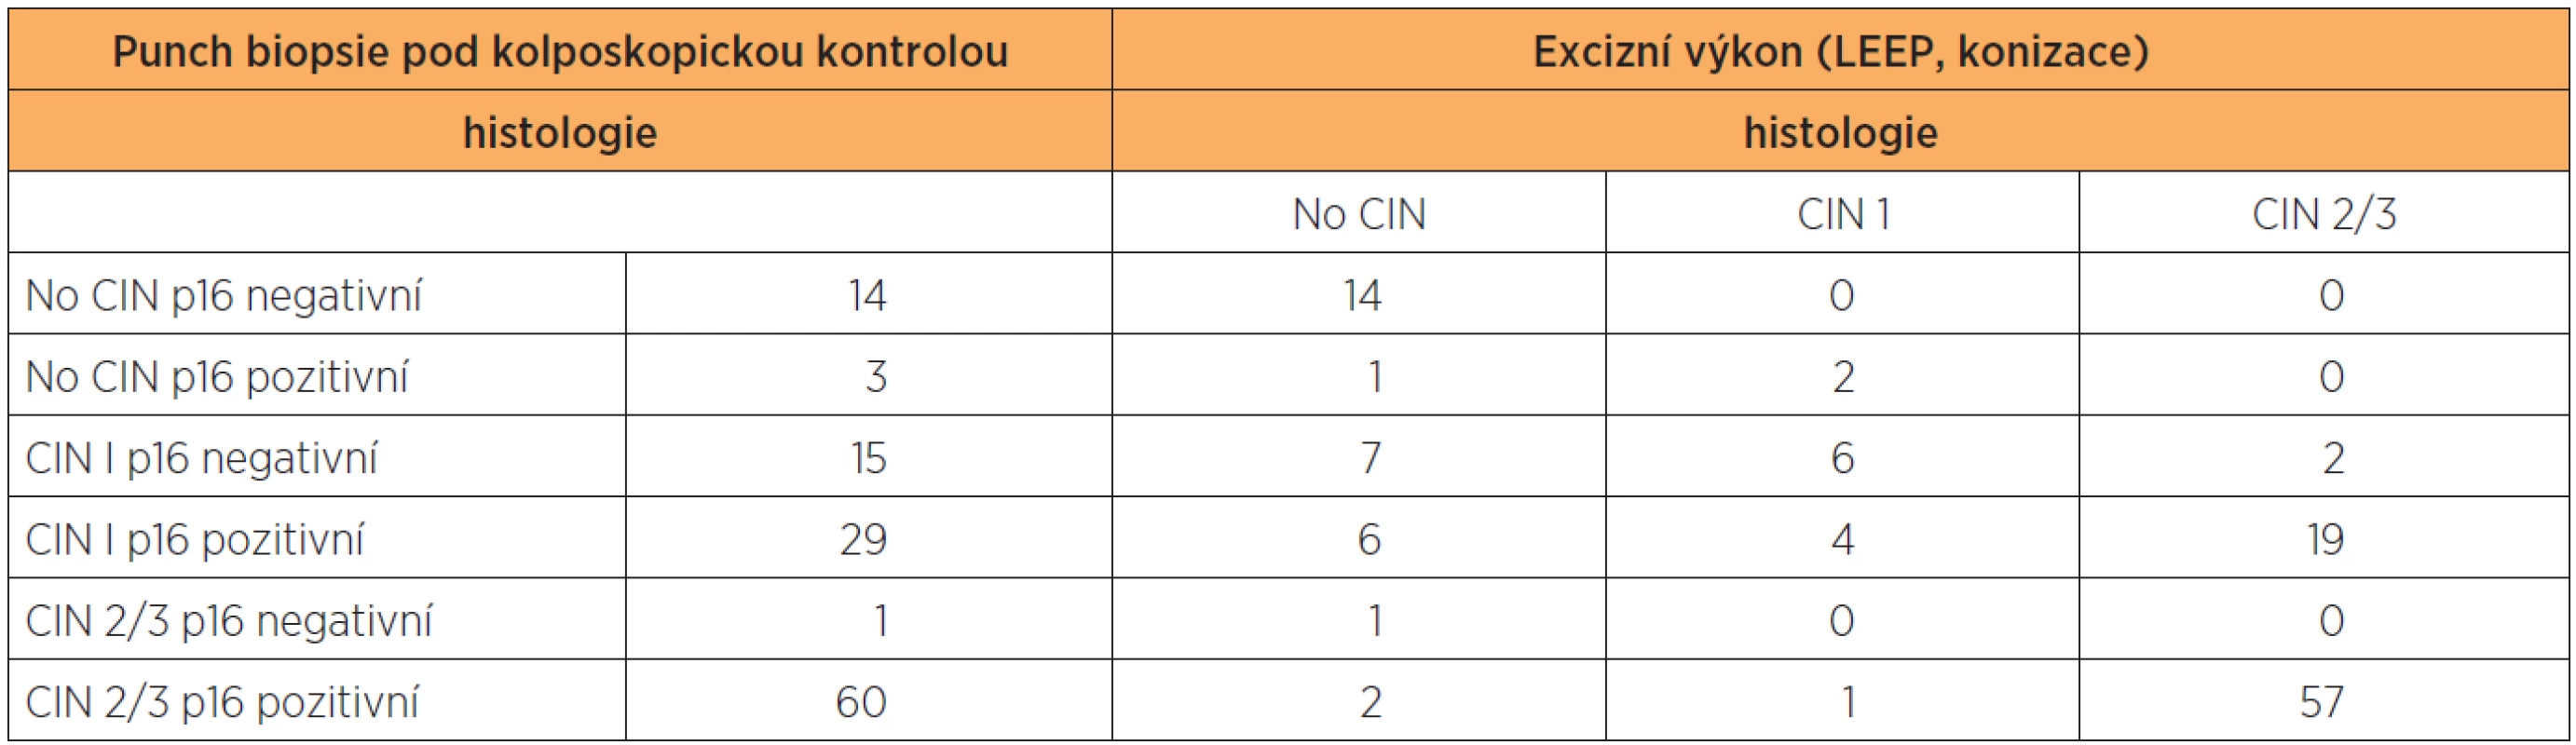 Výsledky histologie a imunohistochemického stanovení exprese p16 ve vzorcích z CDB a definitivní histologické výsledky z excizního výkonu